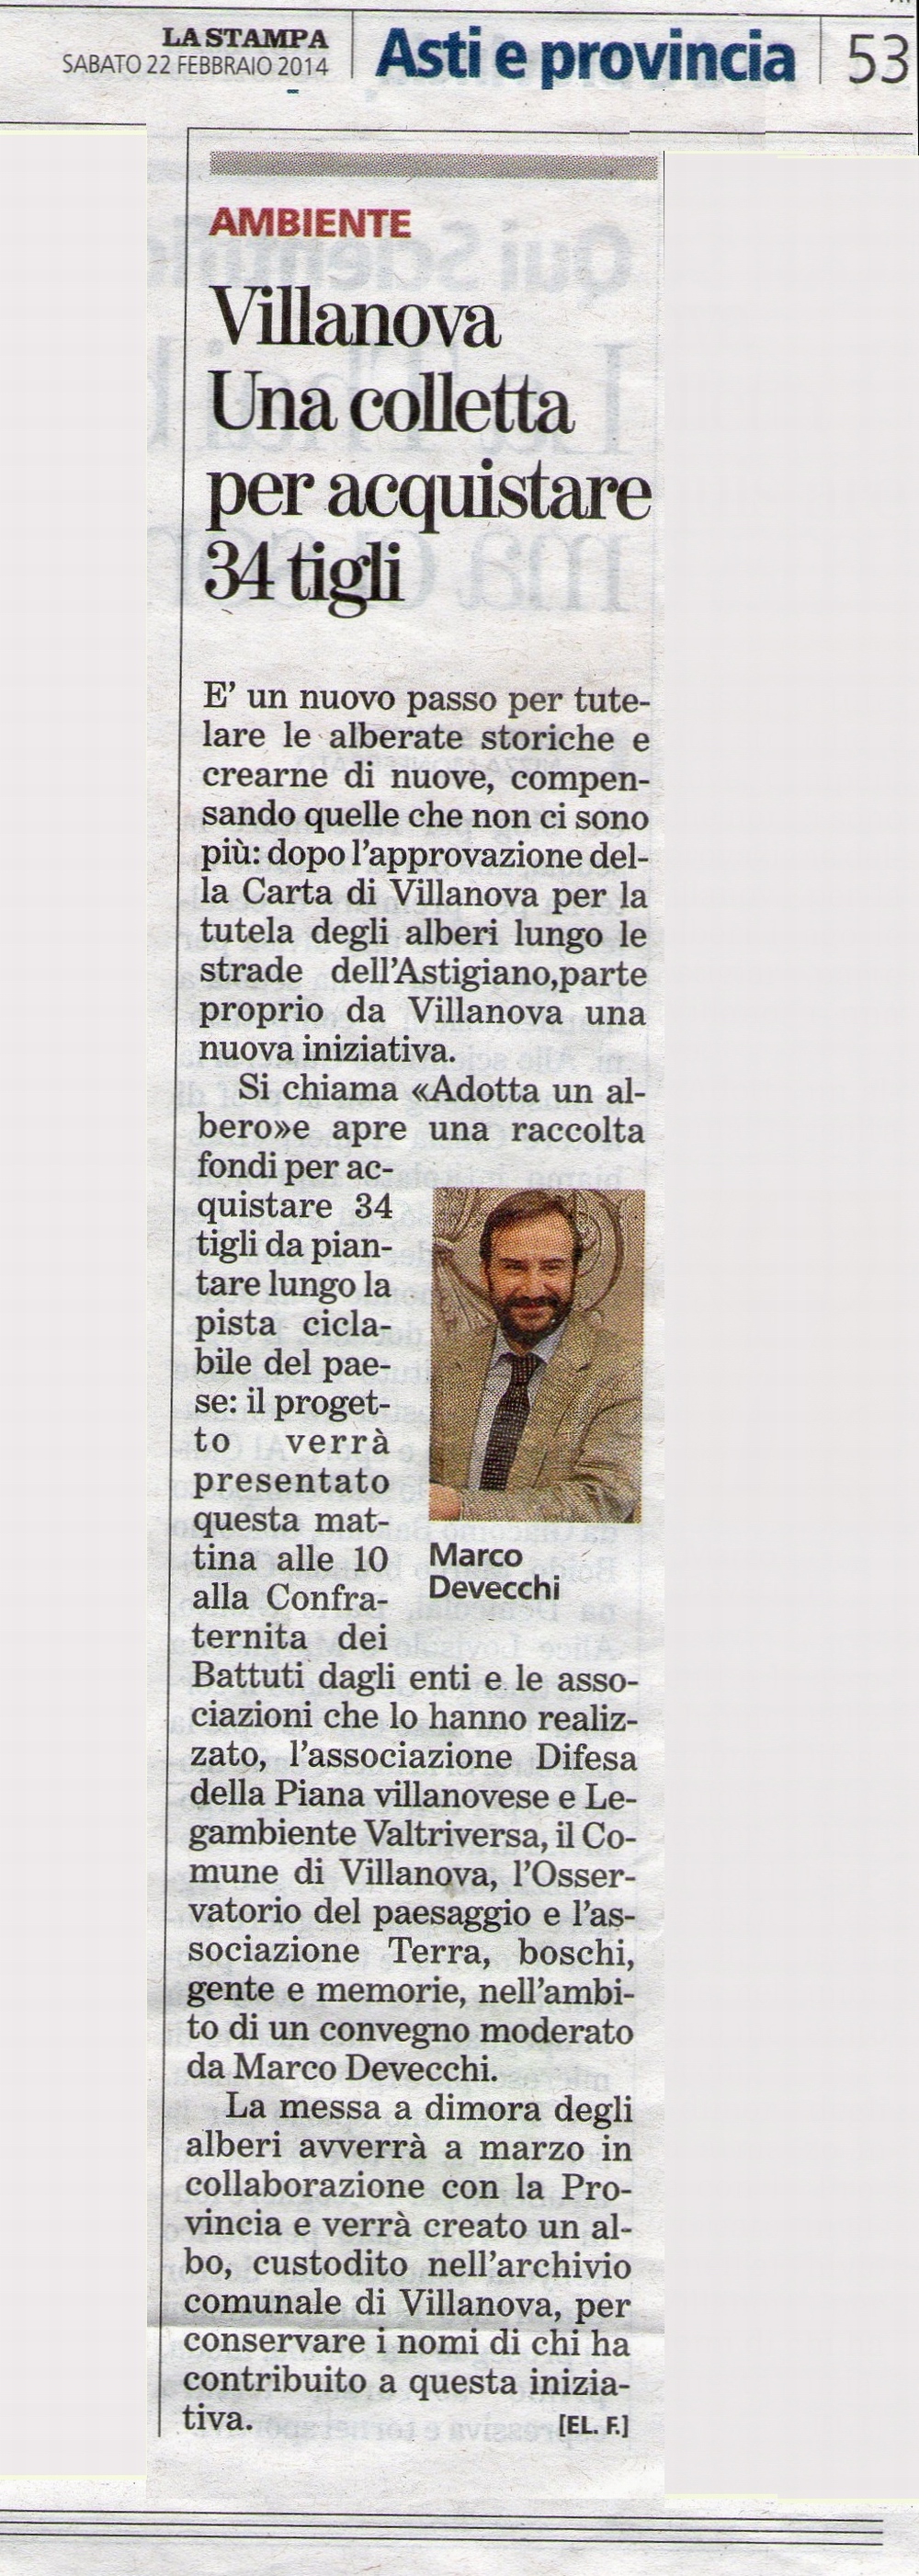 Articolo de La Stampa di Sabato 22 febbraio 2014 sulla presentazione del Progetto della nuova alberata di Villanova d Asti e della pubblica raccolta di fondi per l acquisto degli alberi.